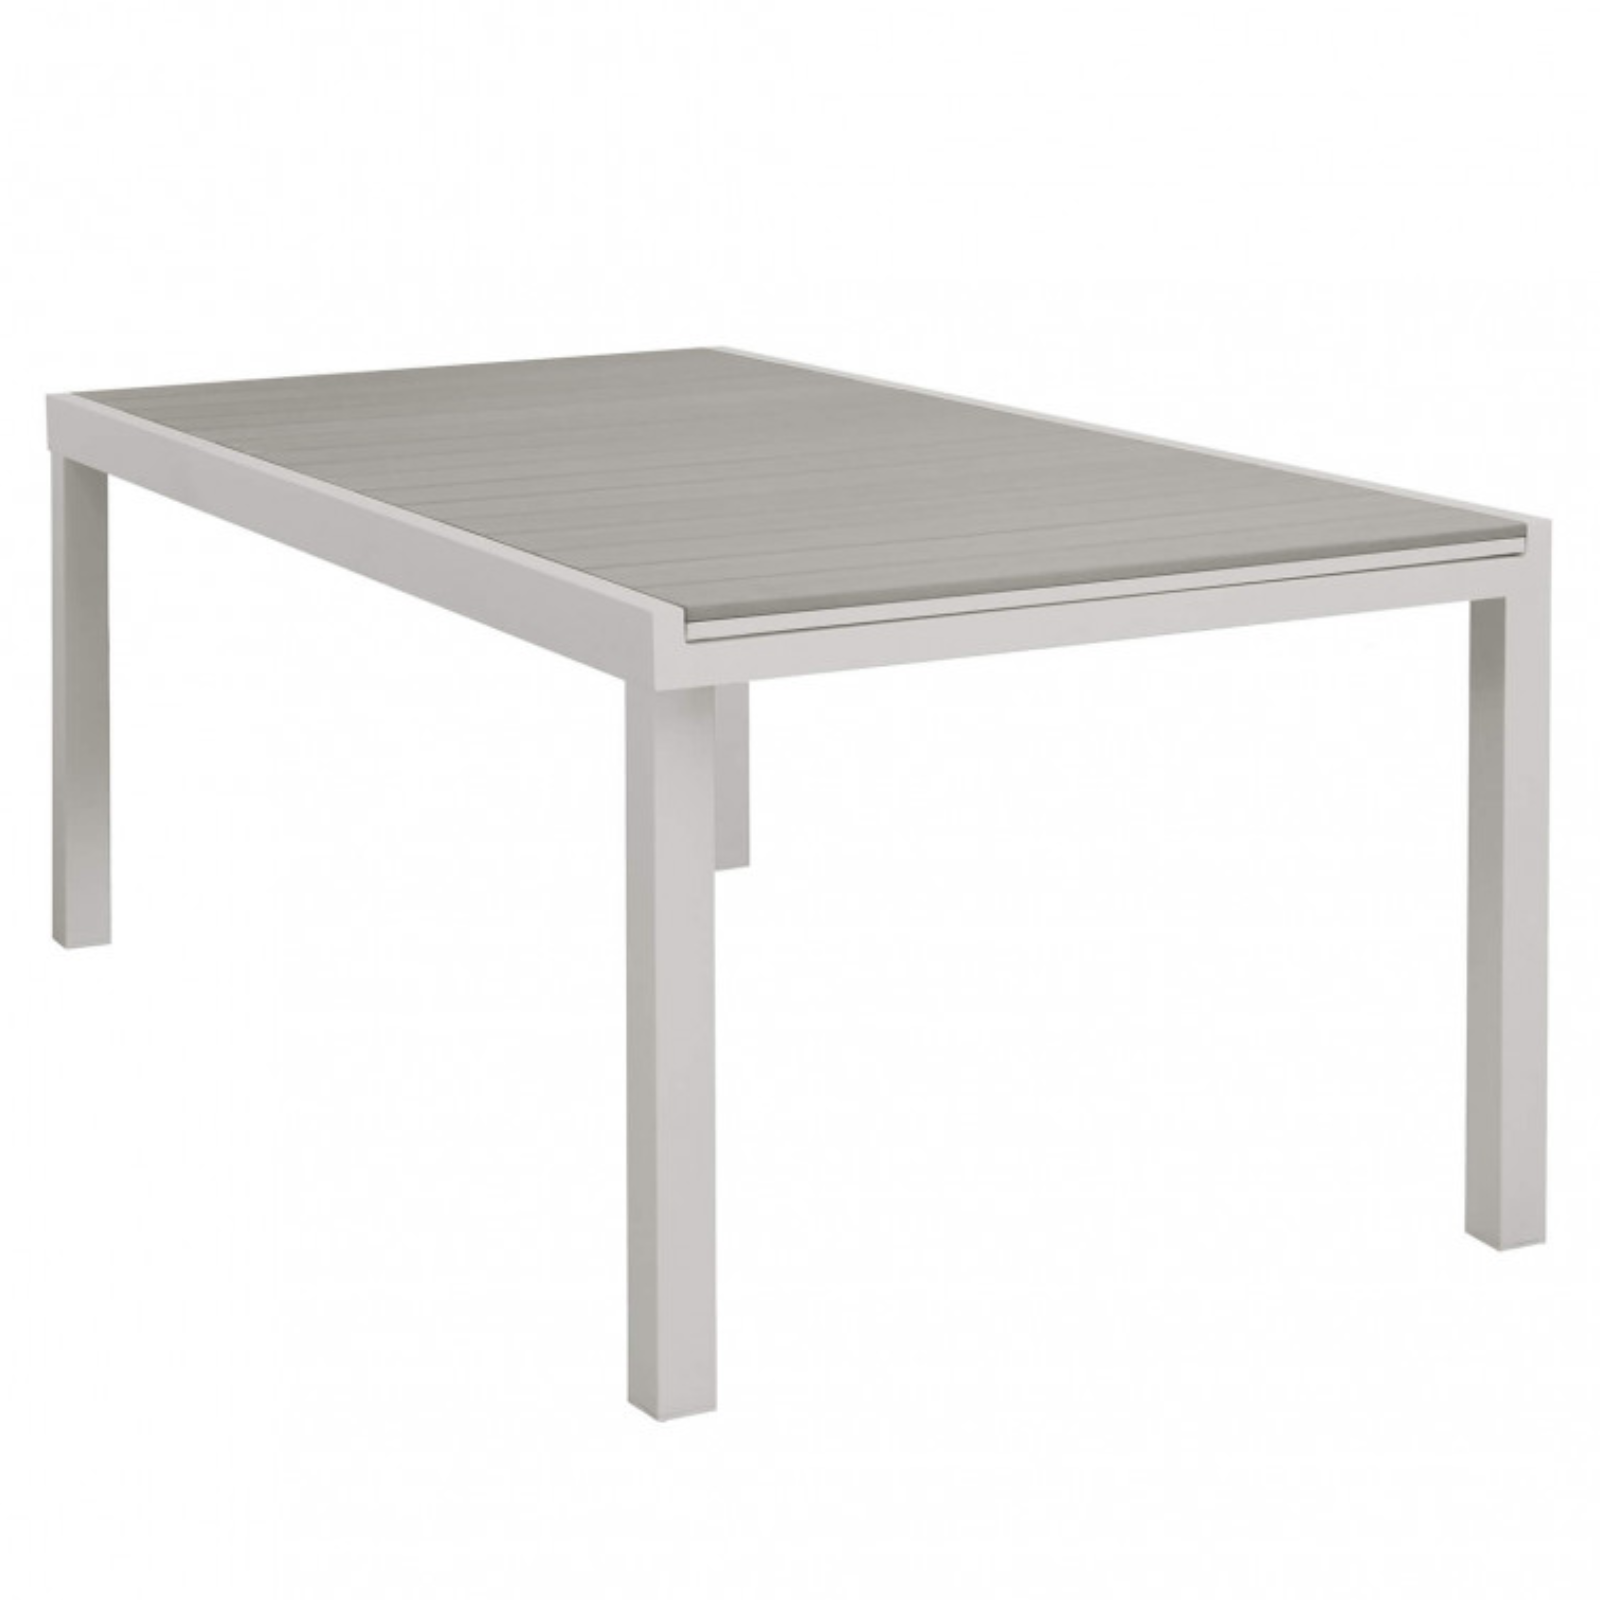 Tavolo allungabile rettangolare da esterno tortora struttura in alluminio e piano in polywood - Penta